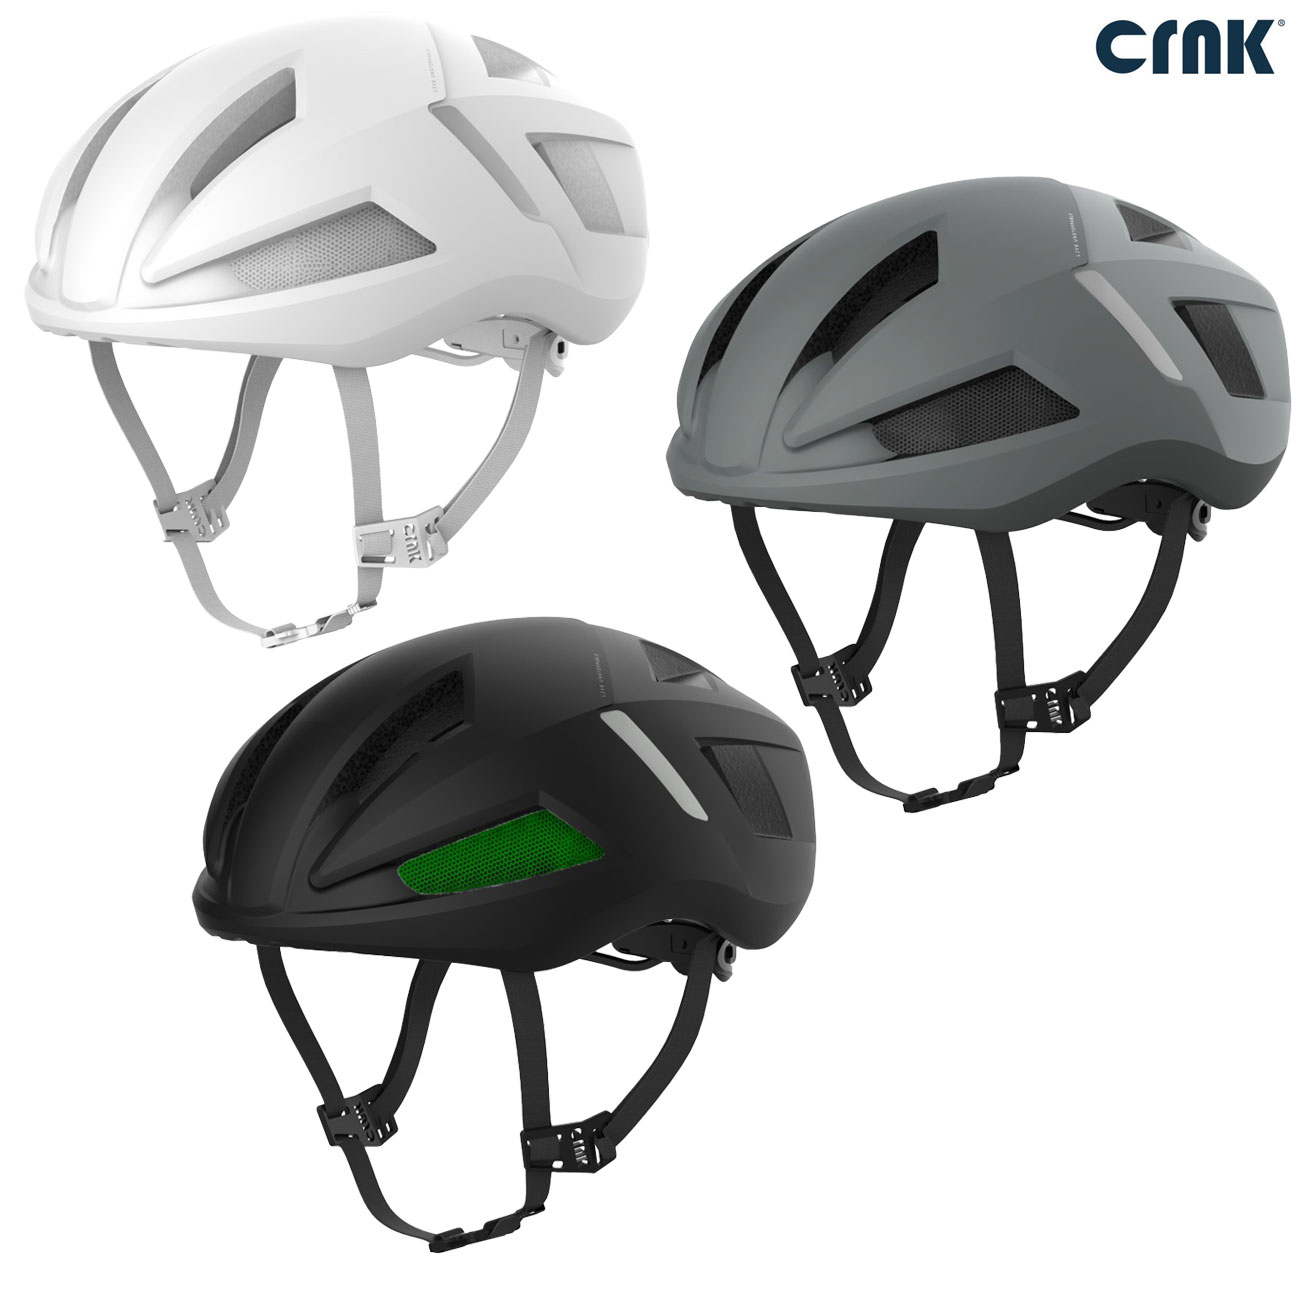 크랭크 뉴아티카 코로이드 보드 인라인 싸이클 라이딩 자전거 MTB 로드 헬멧 헬맷 안전모